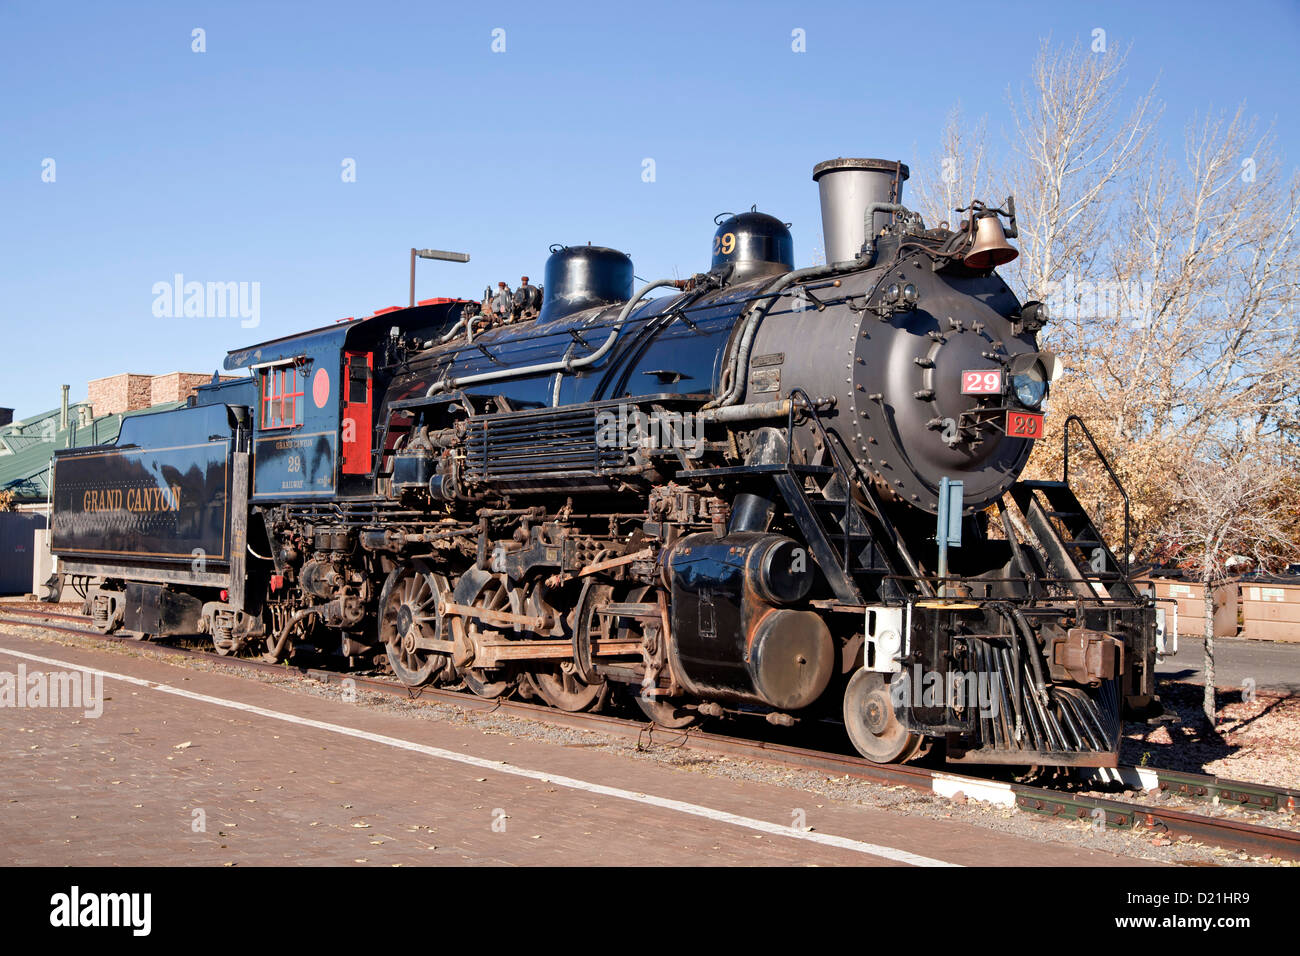 Historic steam locomotive de chemin de fer Grand Canyon Railway Kingman, Arizona, États-Unis d'Amérique, USA Banque D'Images